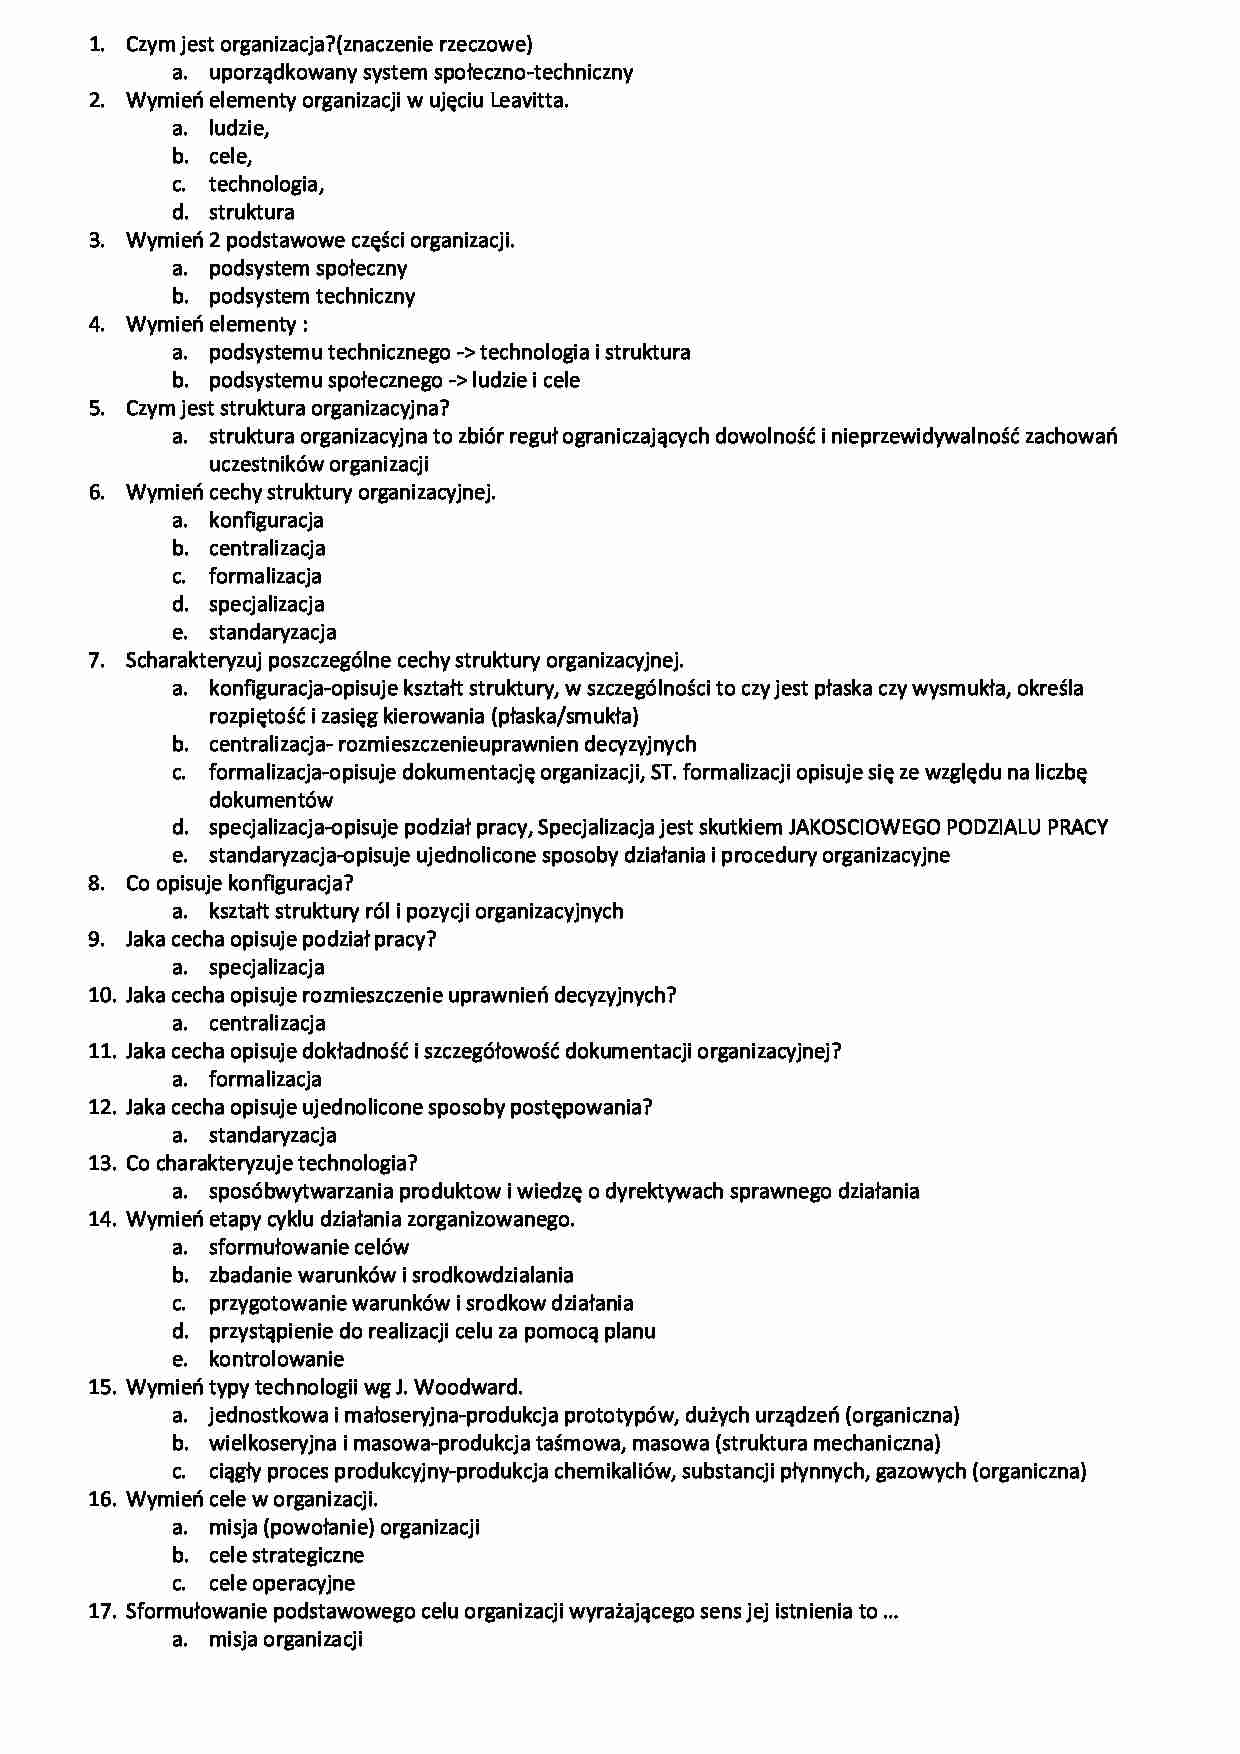 Podstawy zarządzania - zagadnienia na egzamin - strona 1